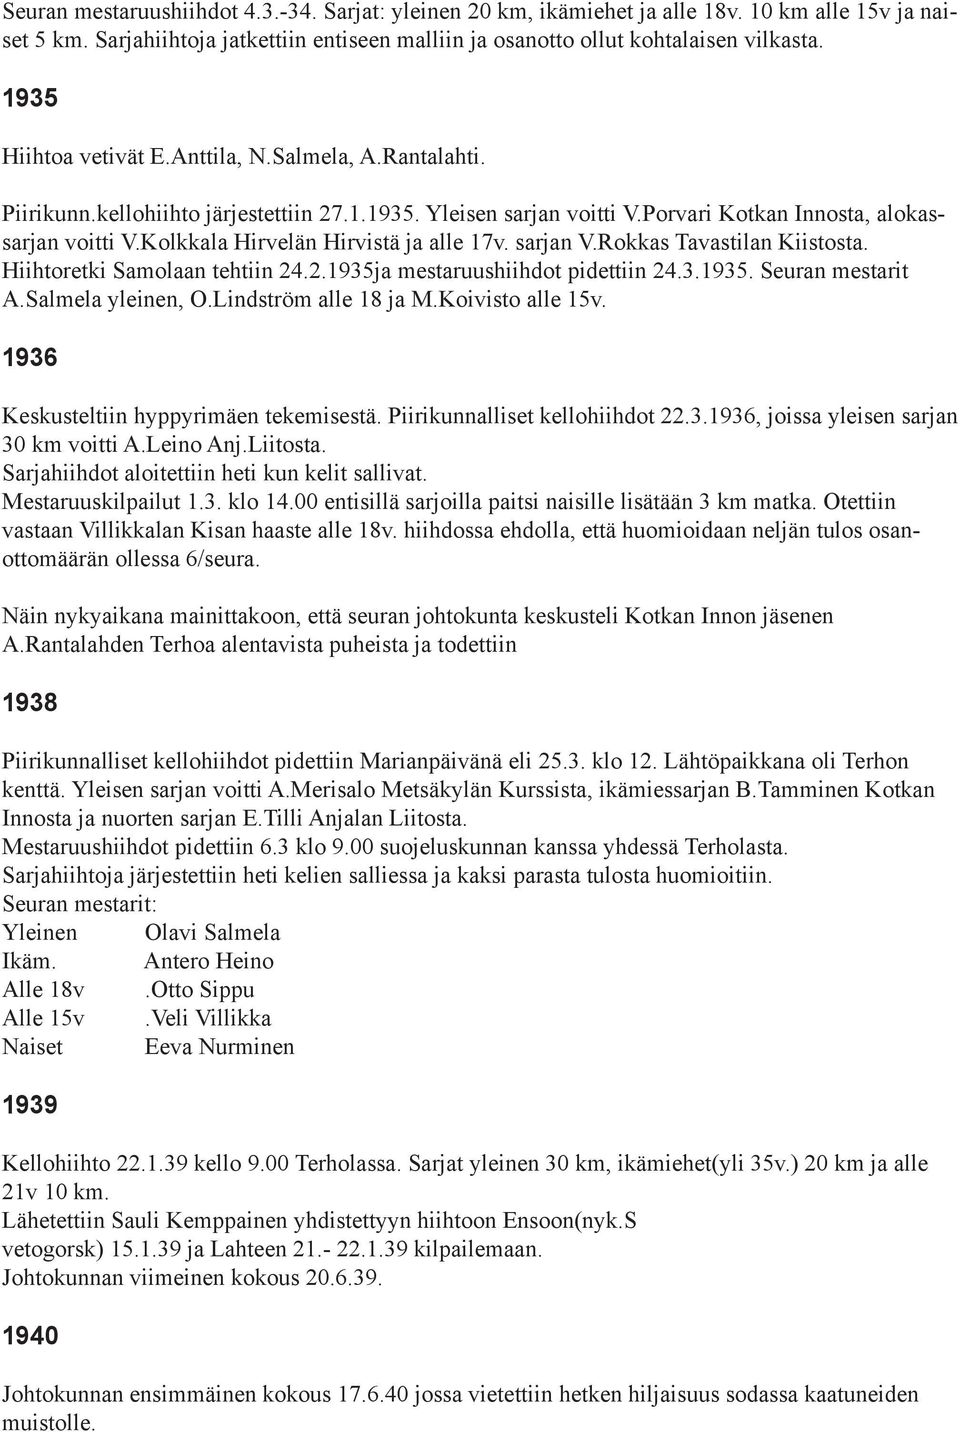 Kolkkala Hirvelän Hirvistä ja alle 17v. sarjan V.Rokkas Tavastilan Kiistosta. Hiihtoretki Samolaan tehtiin 24.2.1935ja mestaruushiihdot pidettiin 24.3.1935. Seuran mestarit A.Salmela yleinen, O.